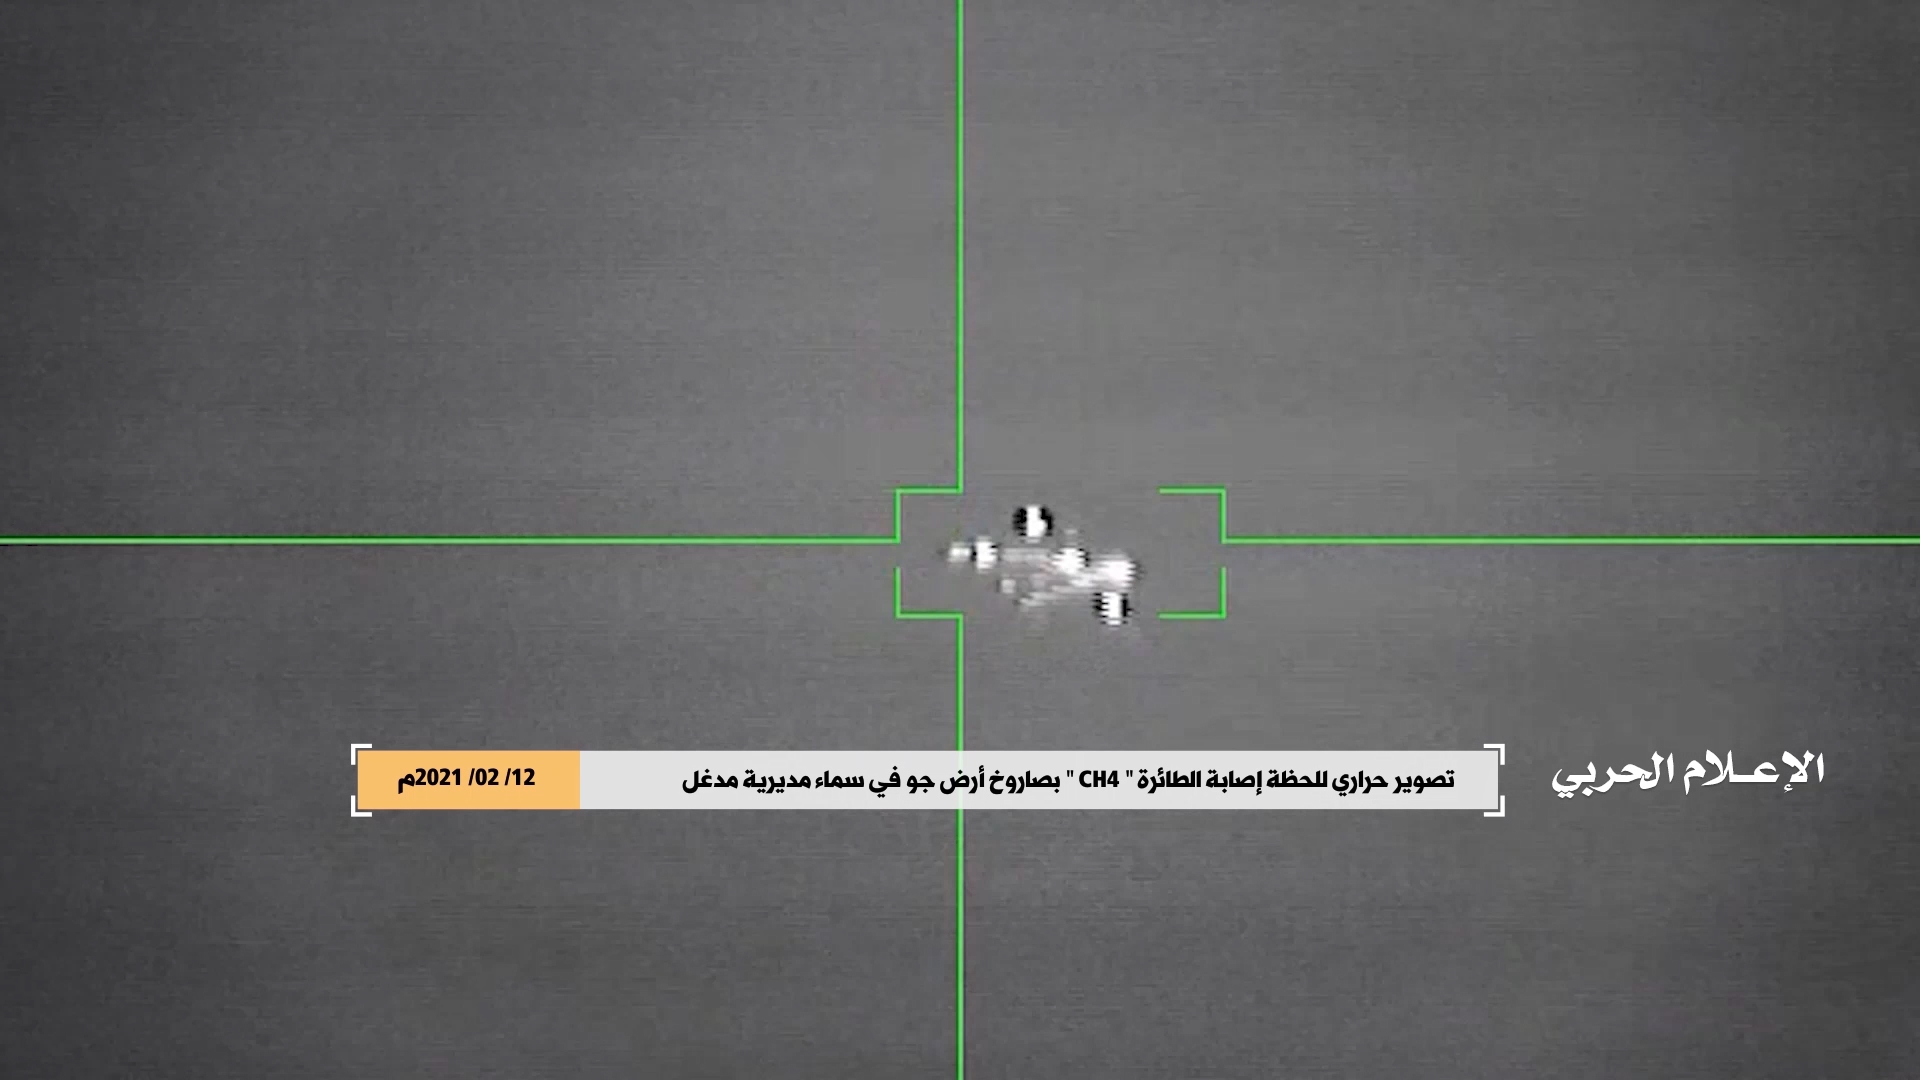 مأرب – مشاهد للحظة اطلاق واصابة الطائرة التجسسية المقاتلة من نوع CH4 في مديرية #مدغل